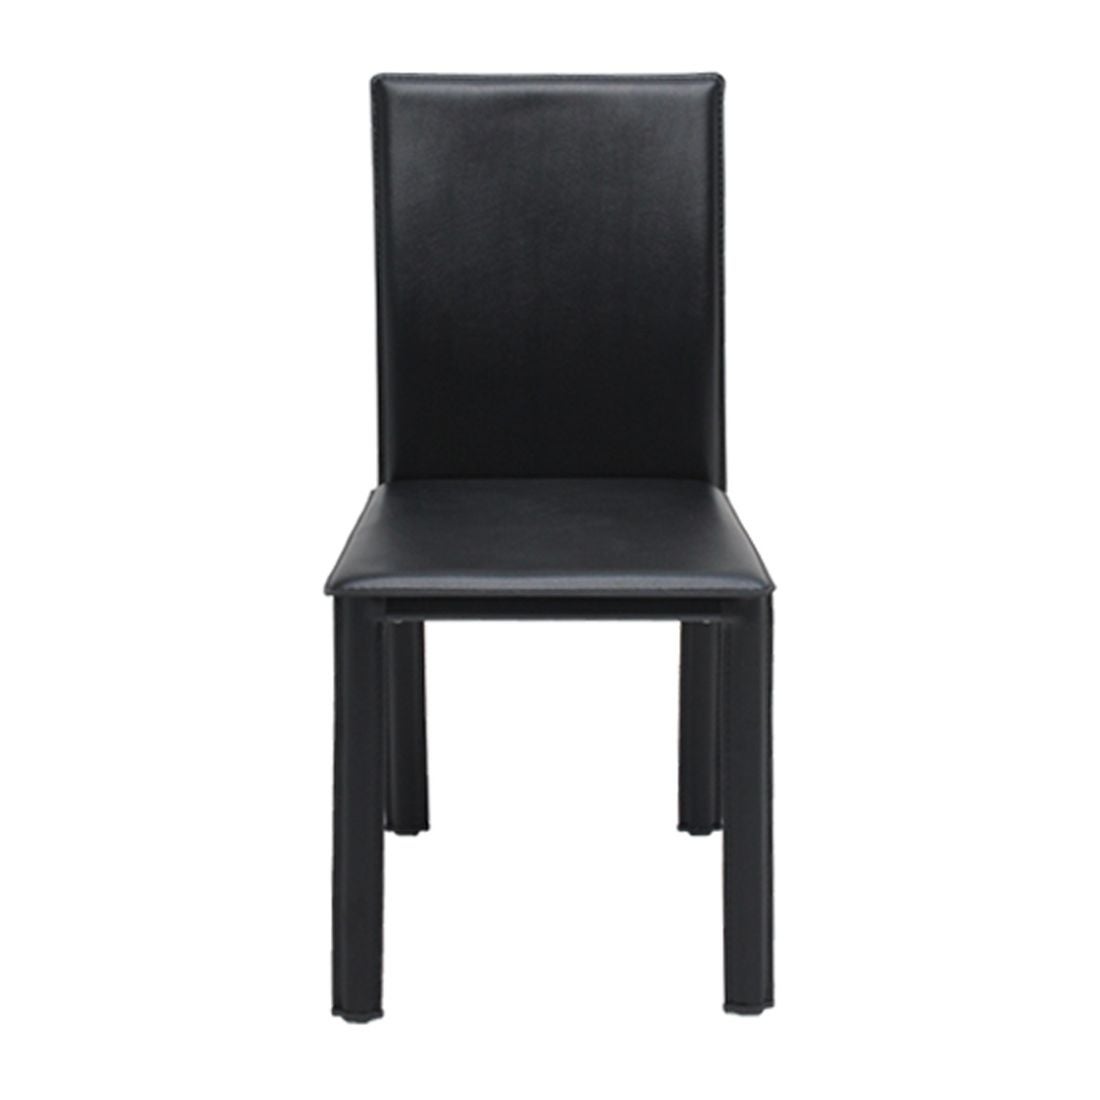 เก้าอี้ทานอาหาร เก้าอี้เหล็กเบาะหนัง รุ่น Asina-SB Design Square